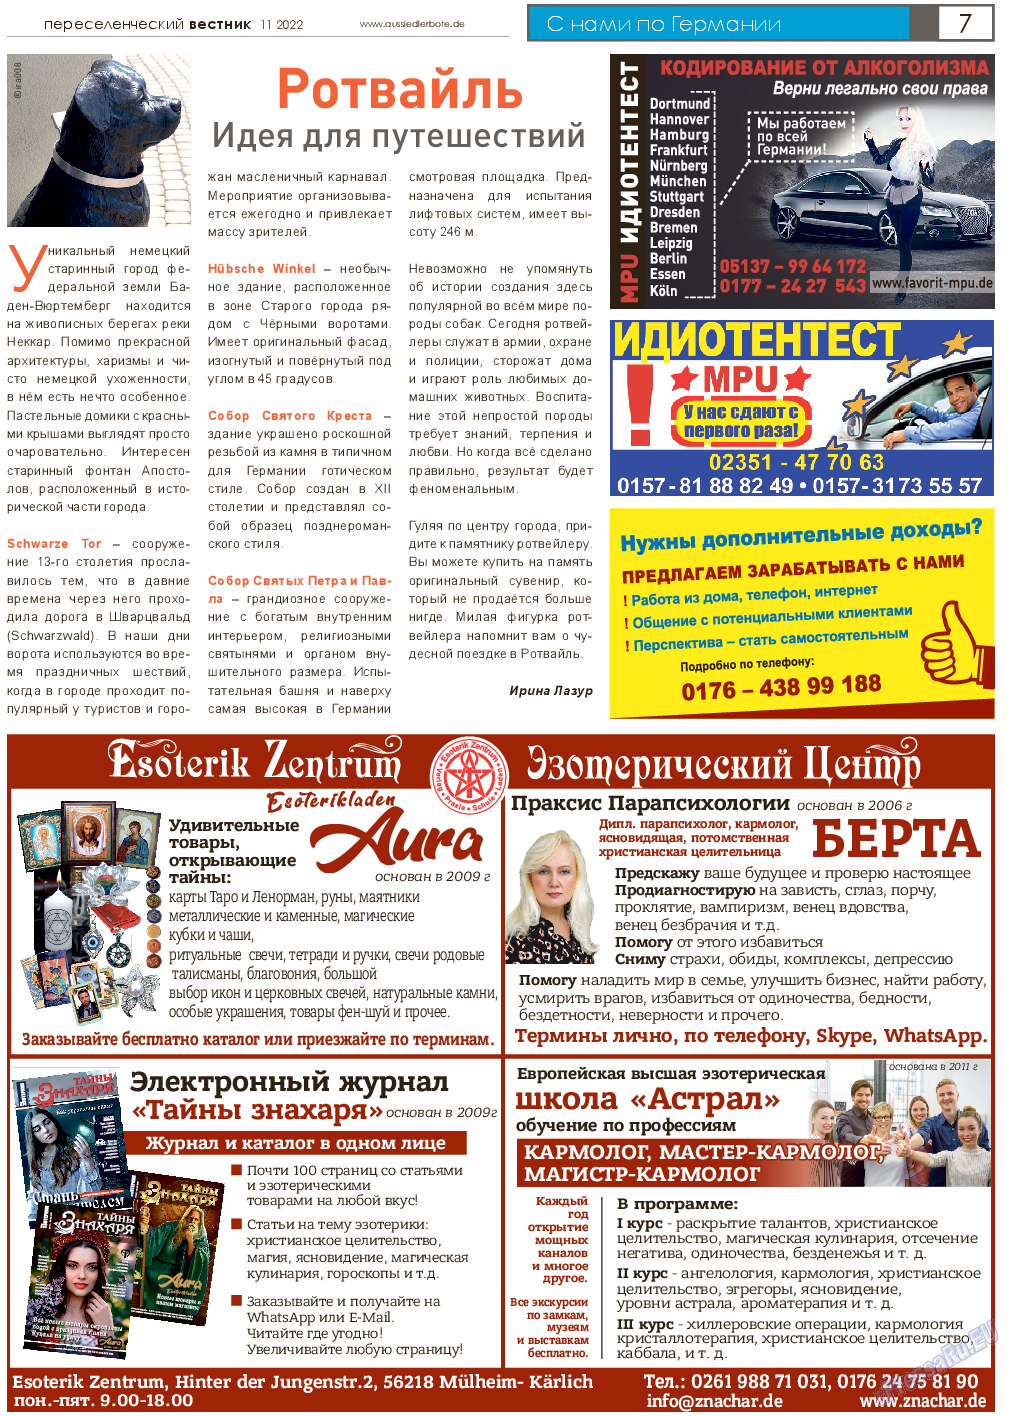 Переселенческий вестник (газета). 2022 год, номер 11, стр. 7